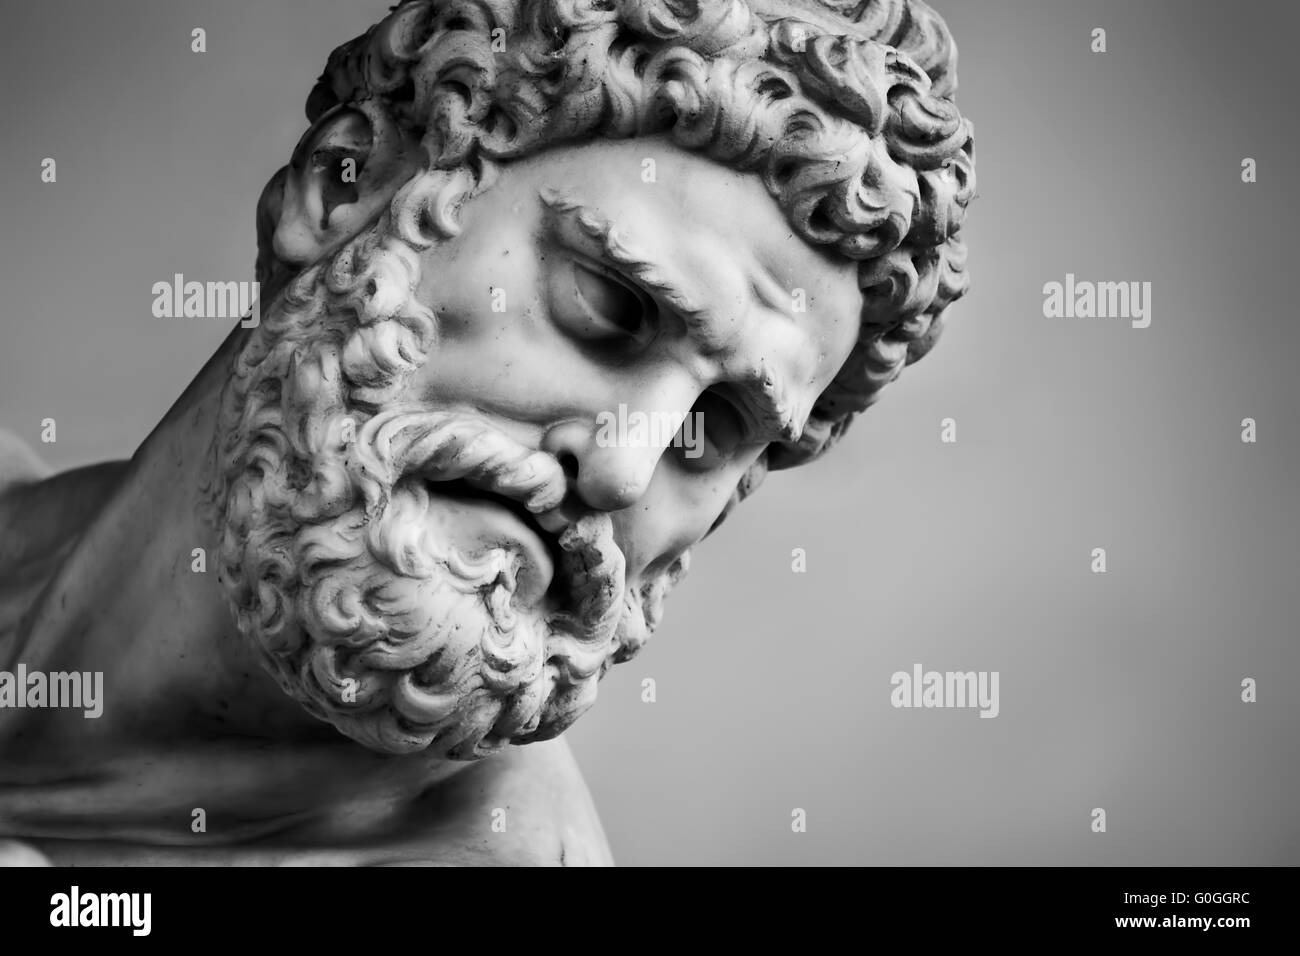 La sculpture d'Hercule et de nessus. Florence, Italie. Chef close-up Banque D'Images